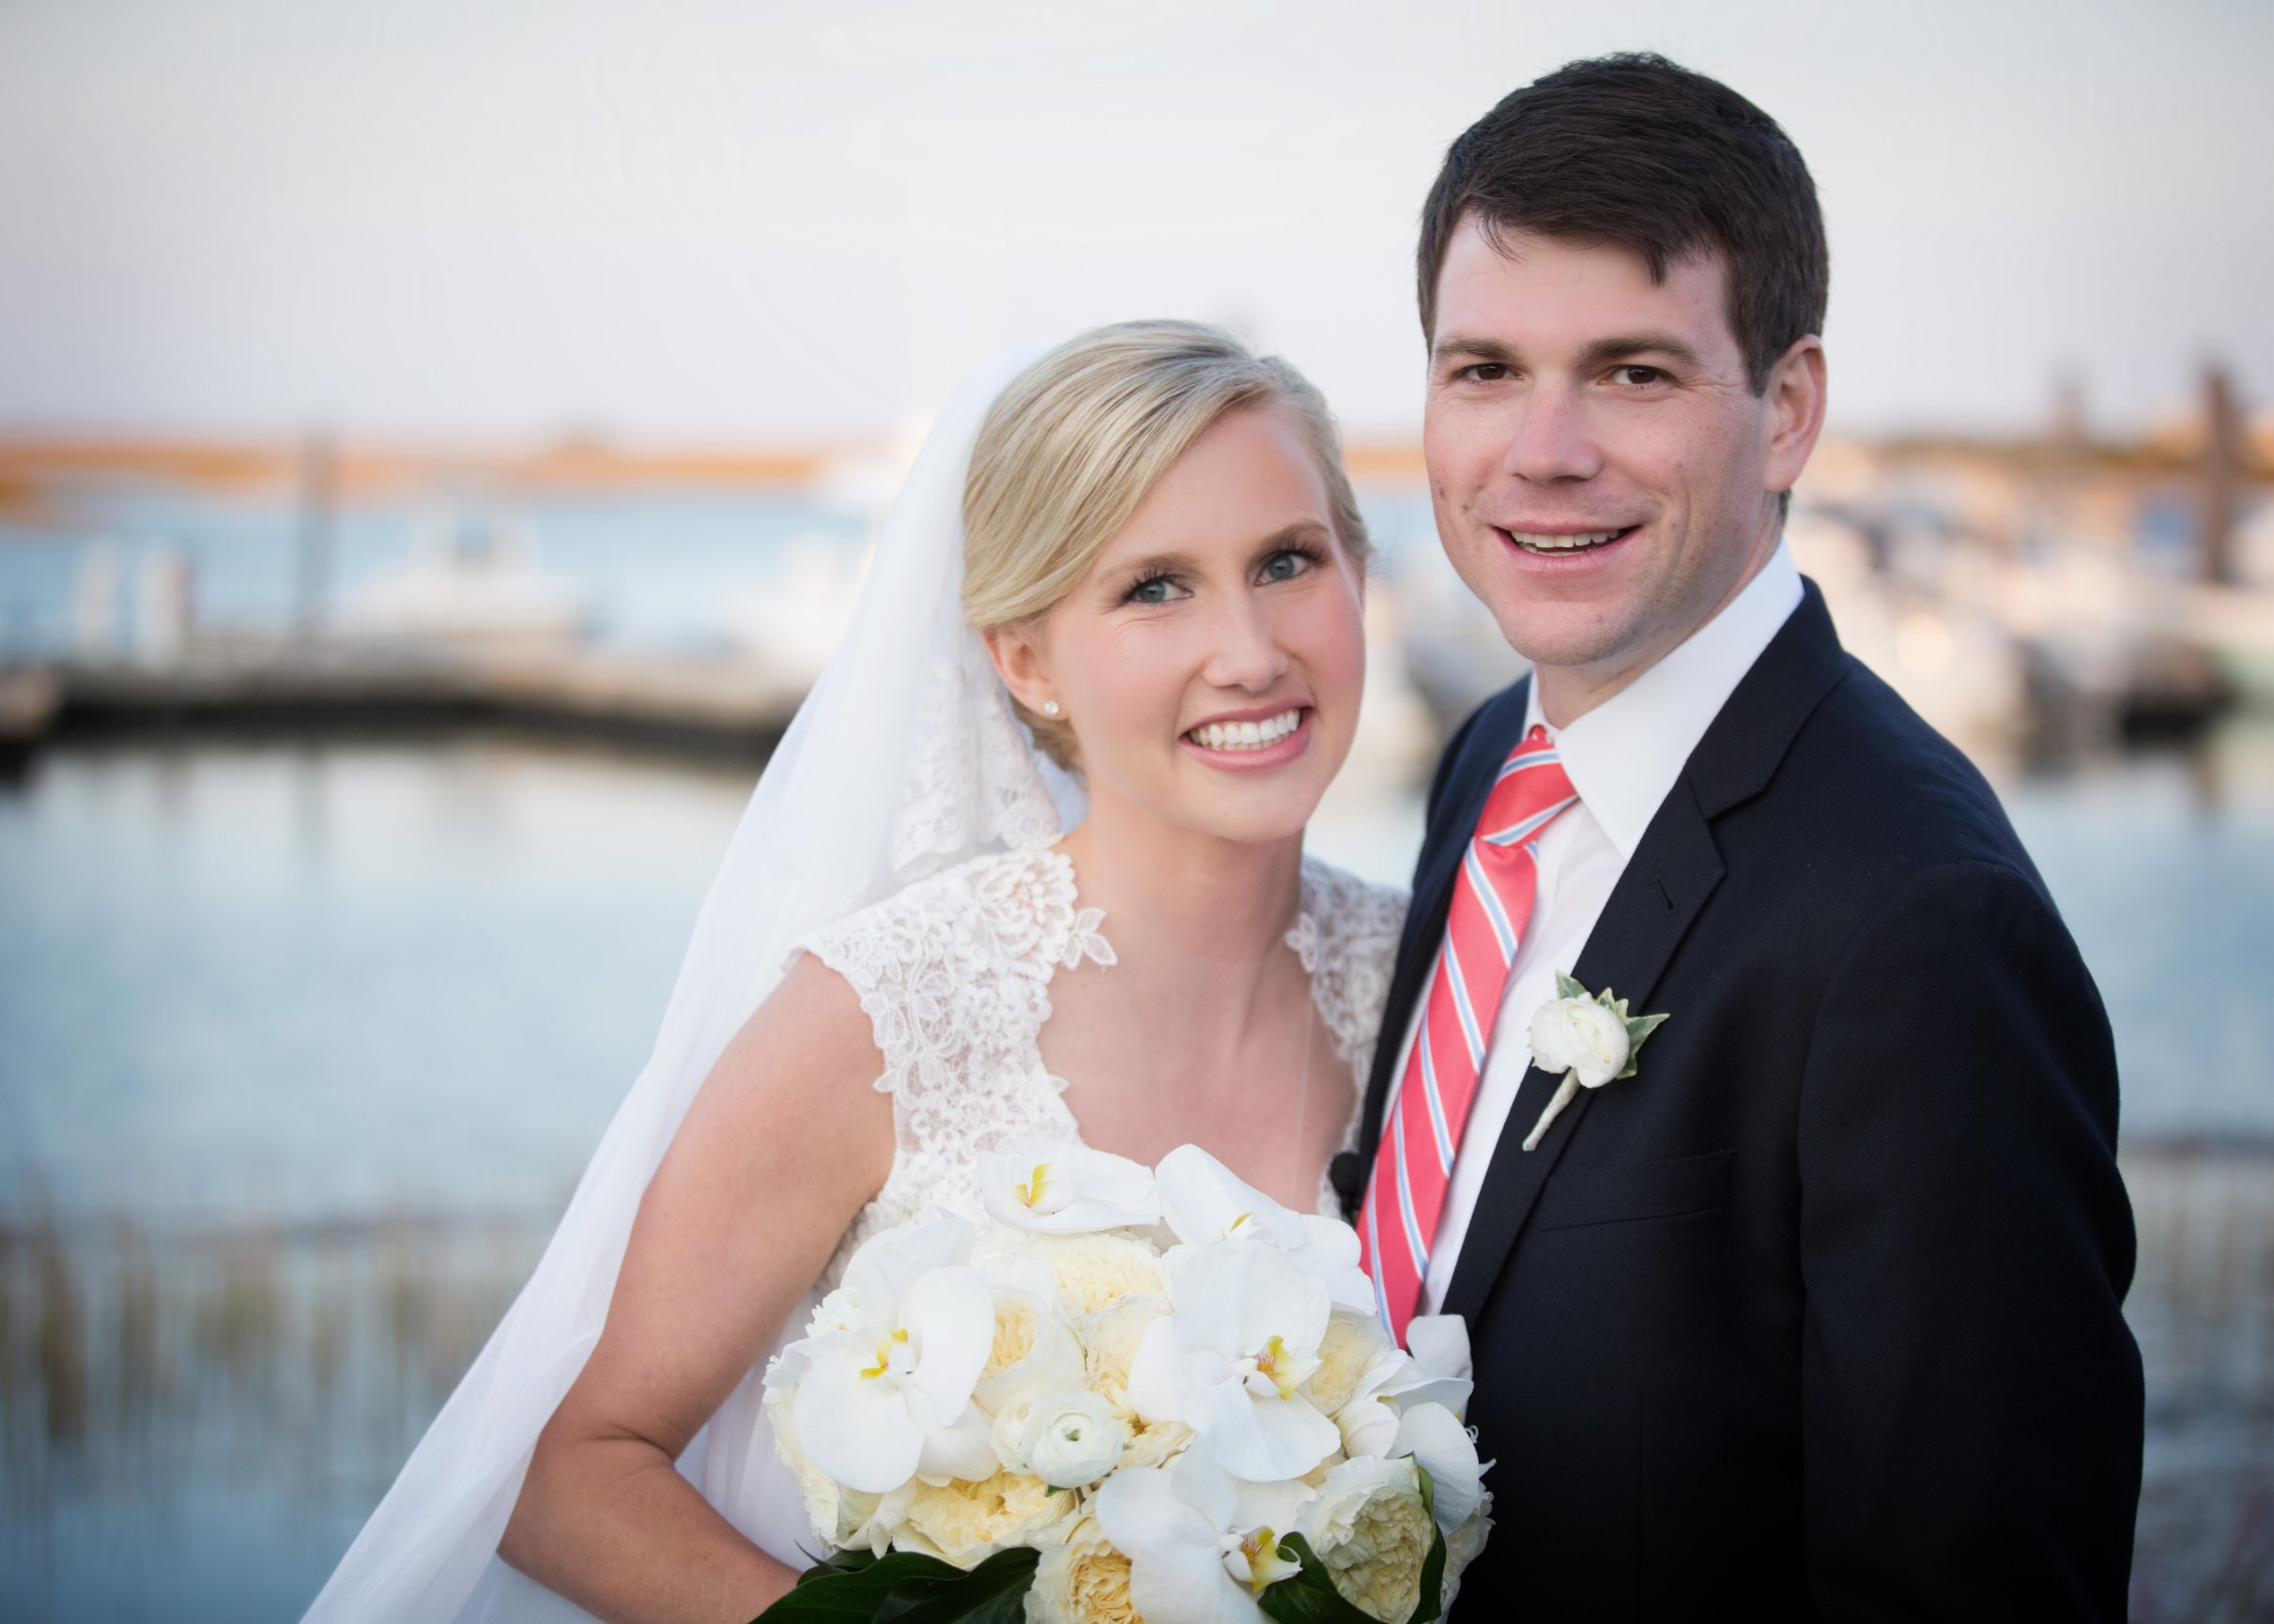 Wedding Photography | Aesthetic Images Photography | North Carolina